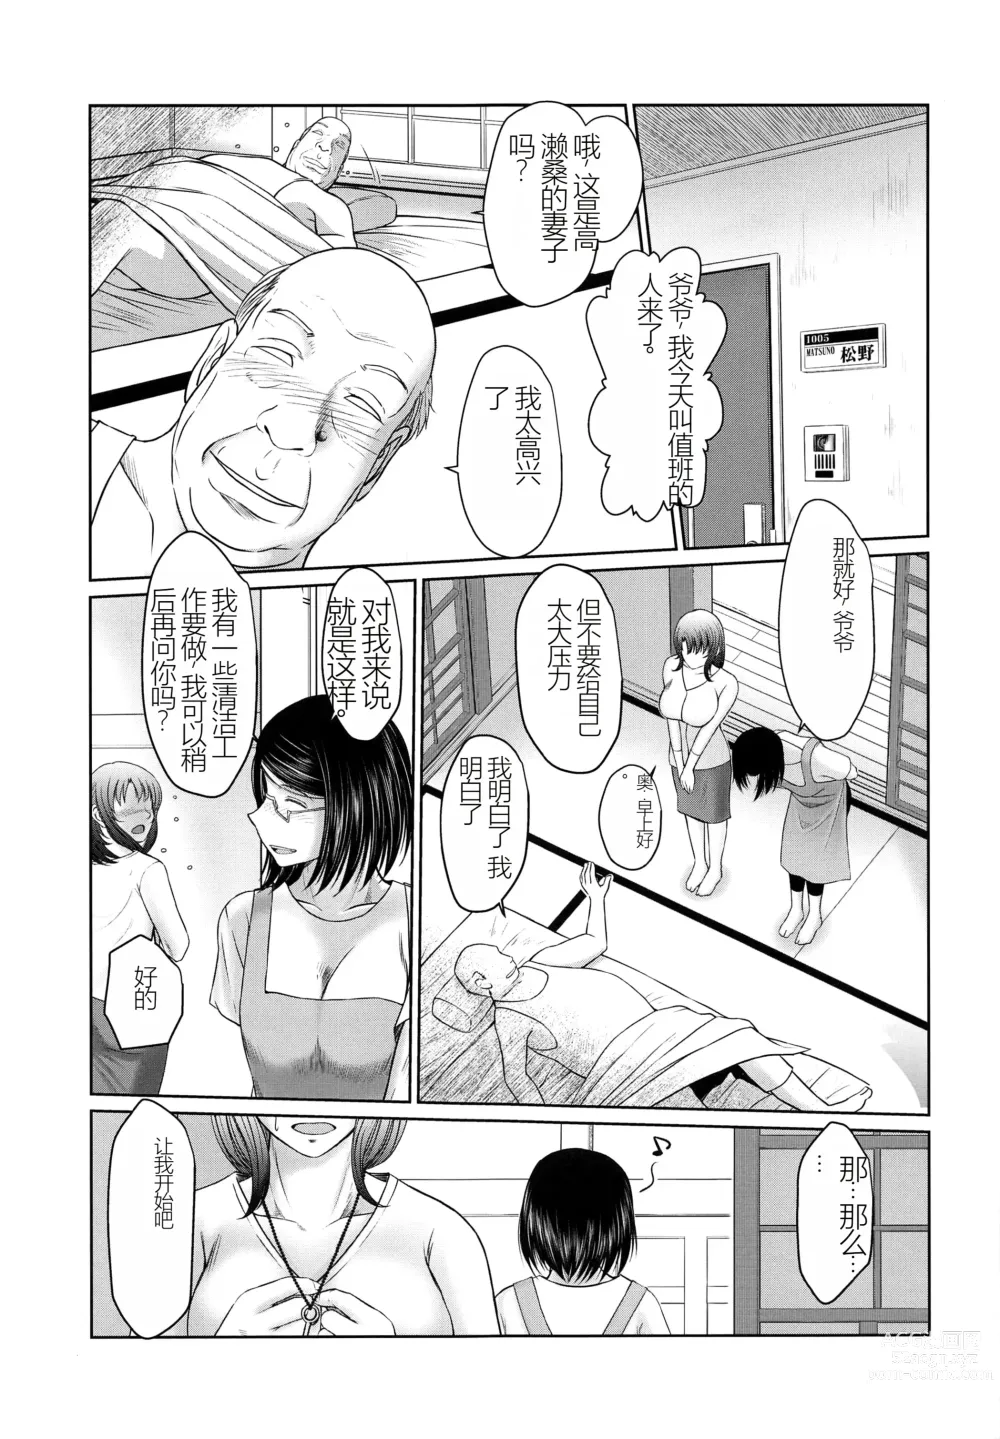 Page 6 of doujinshi Kagesawa Mura no Akai Kagi